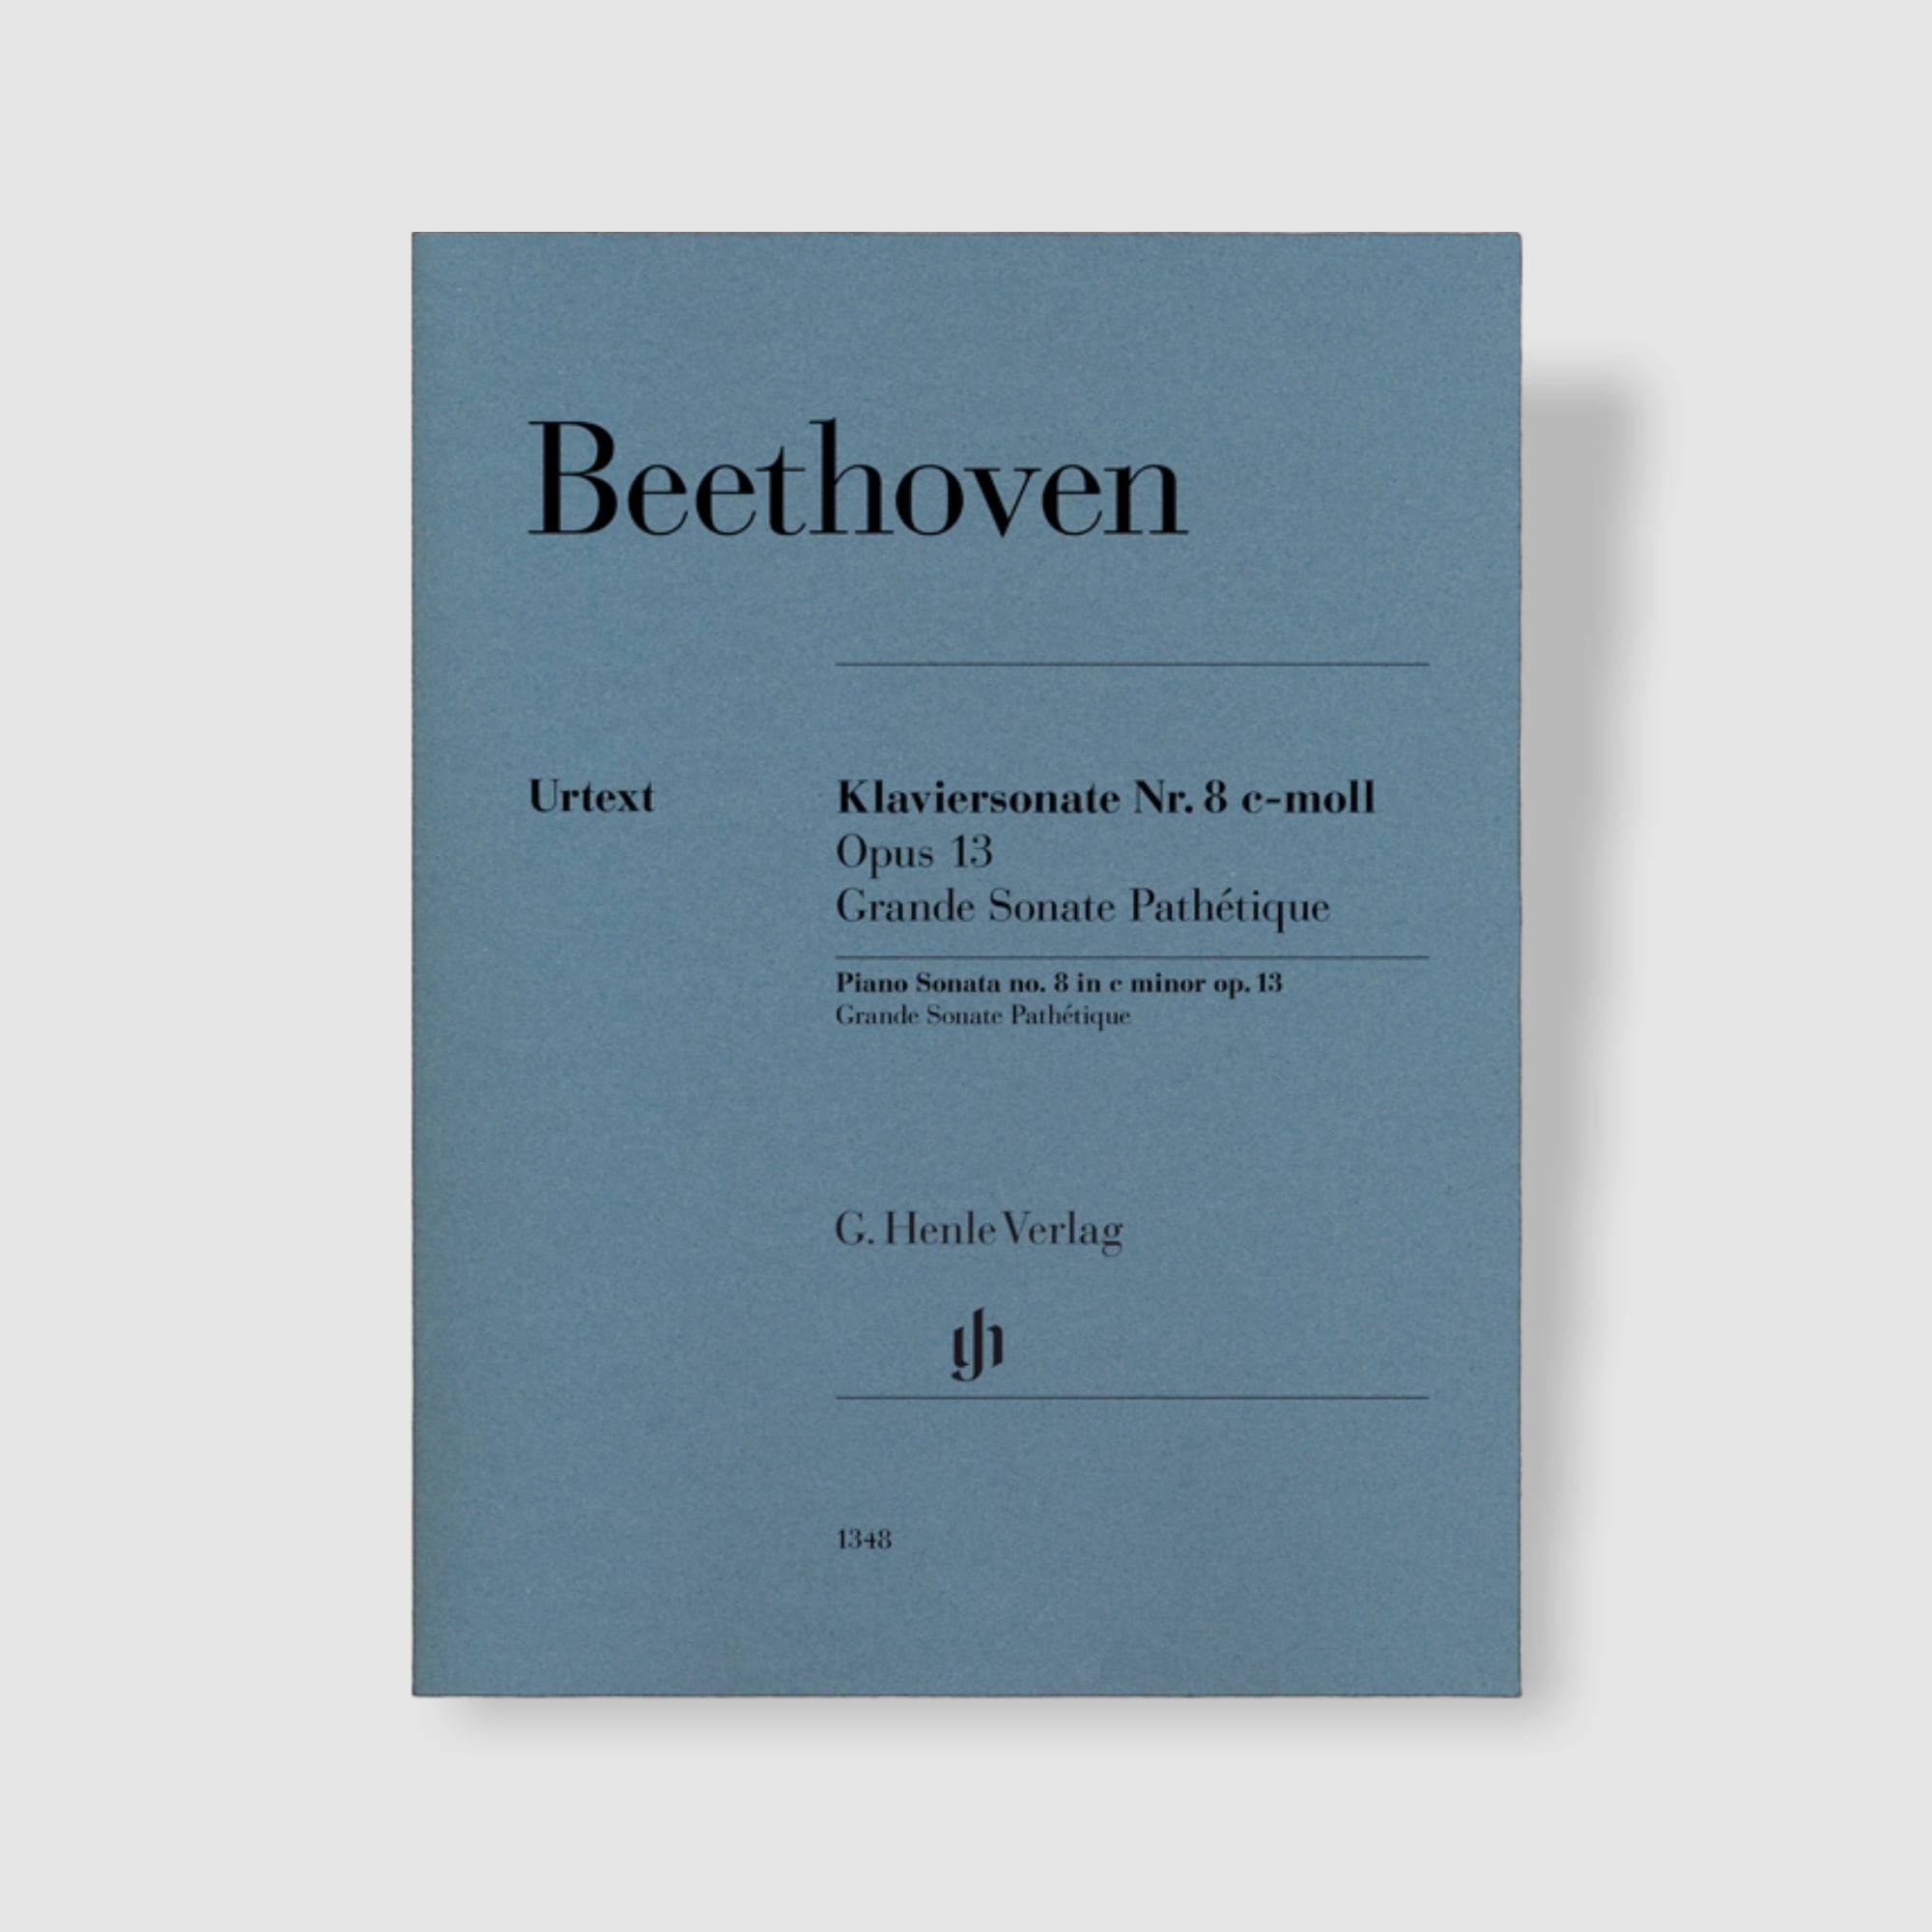 베토벤 피아노 소나타 No. 8 in c minor, Op. 13